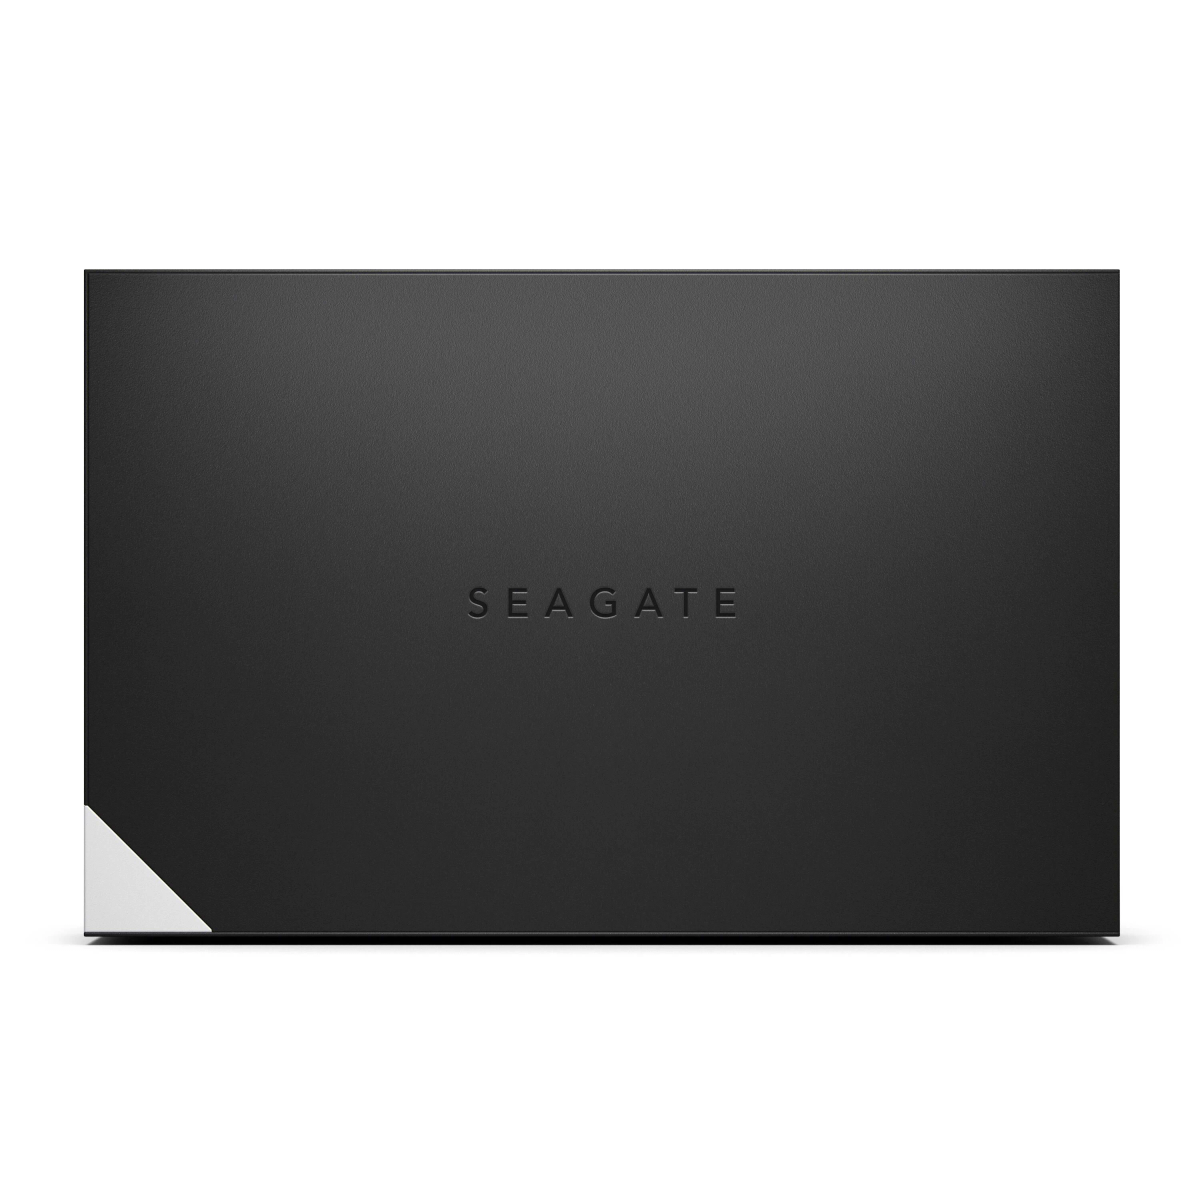 SEAGATE STLC12000400, 12 TB 3,5 HDD, extern, Zoll, Schwarz